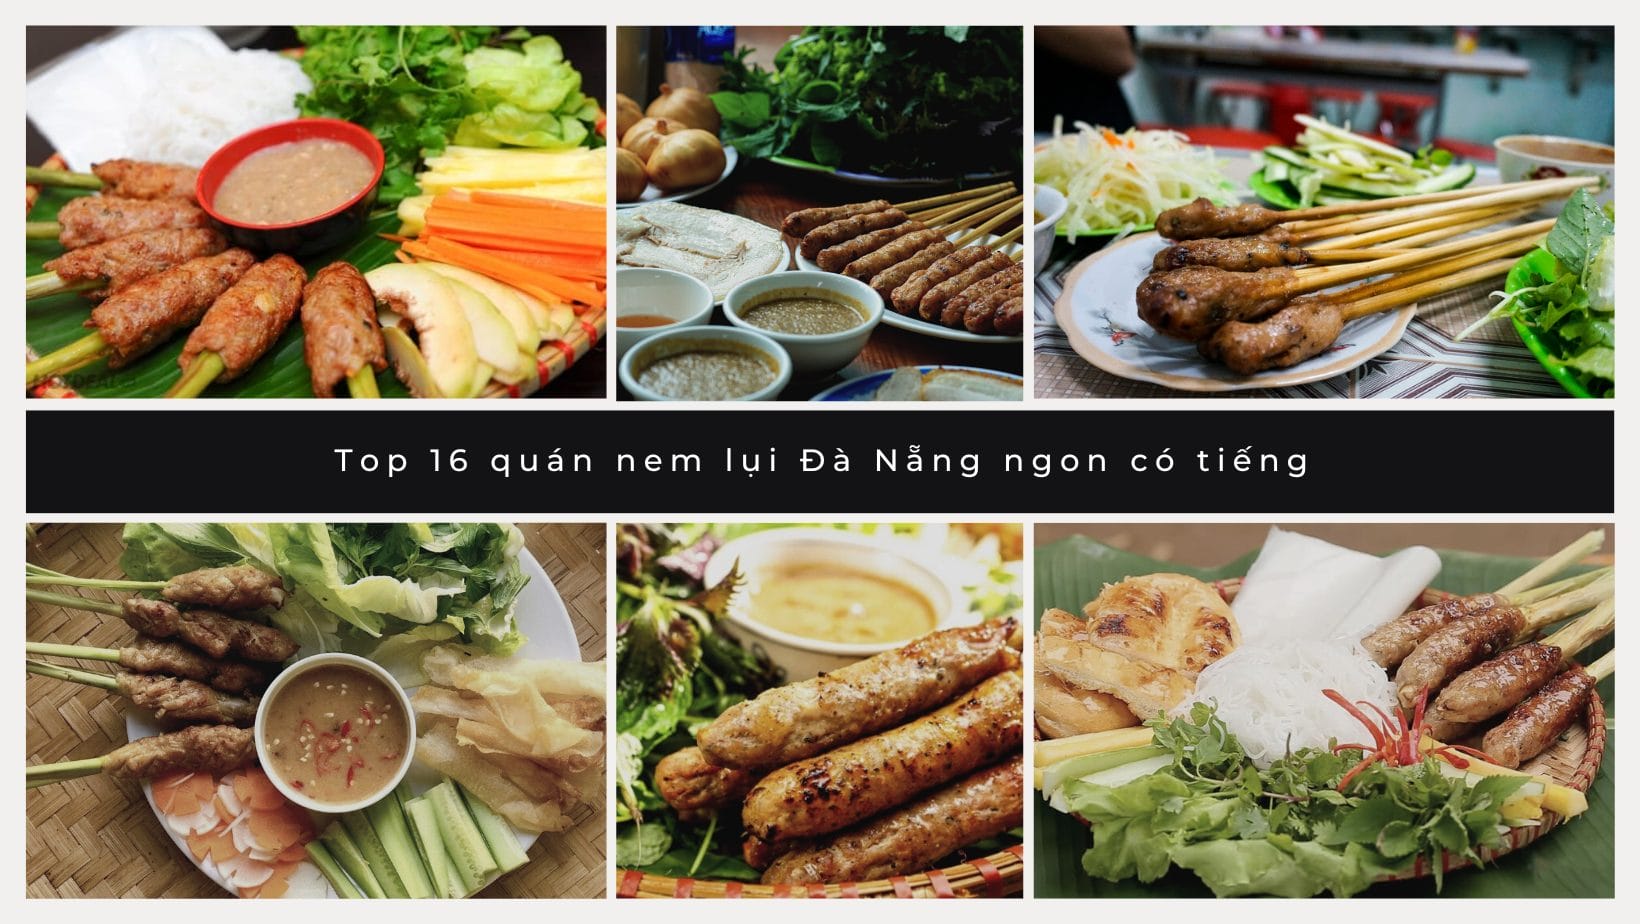 Top 16 quán nem lụi Đà Nẵng ngon có tiếng